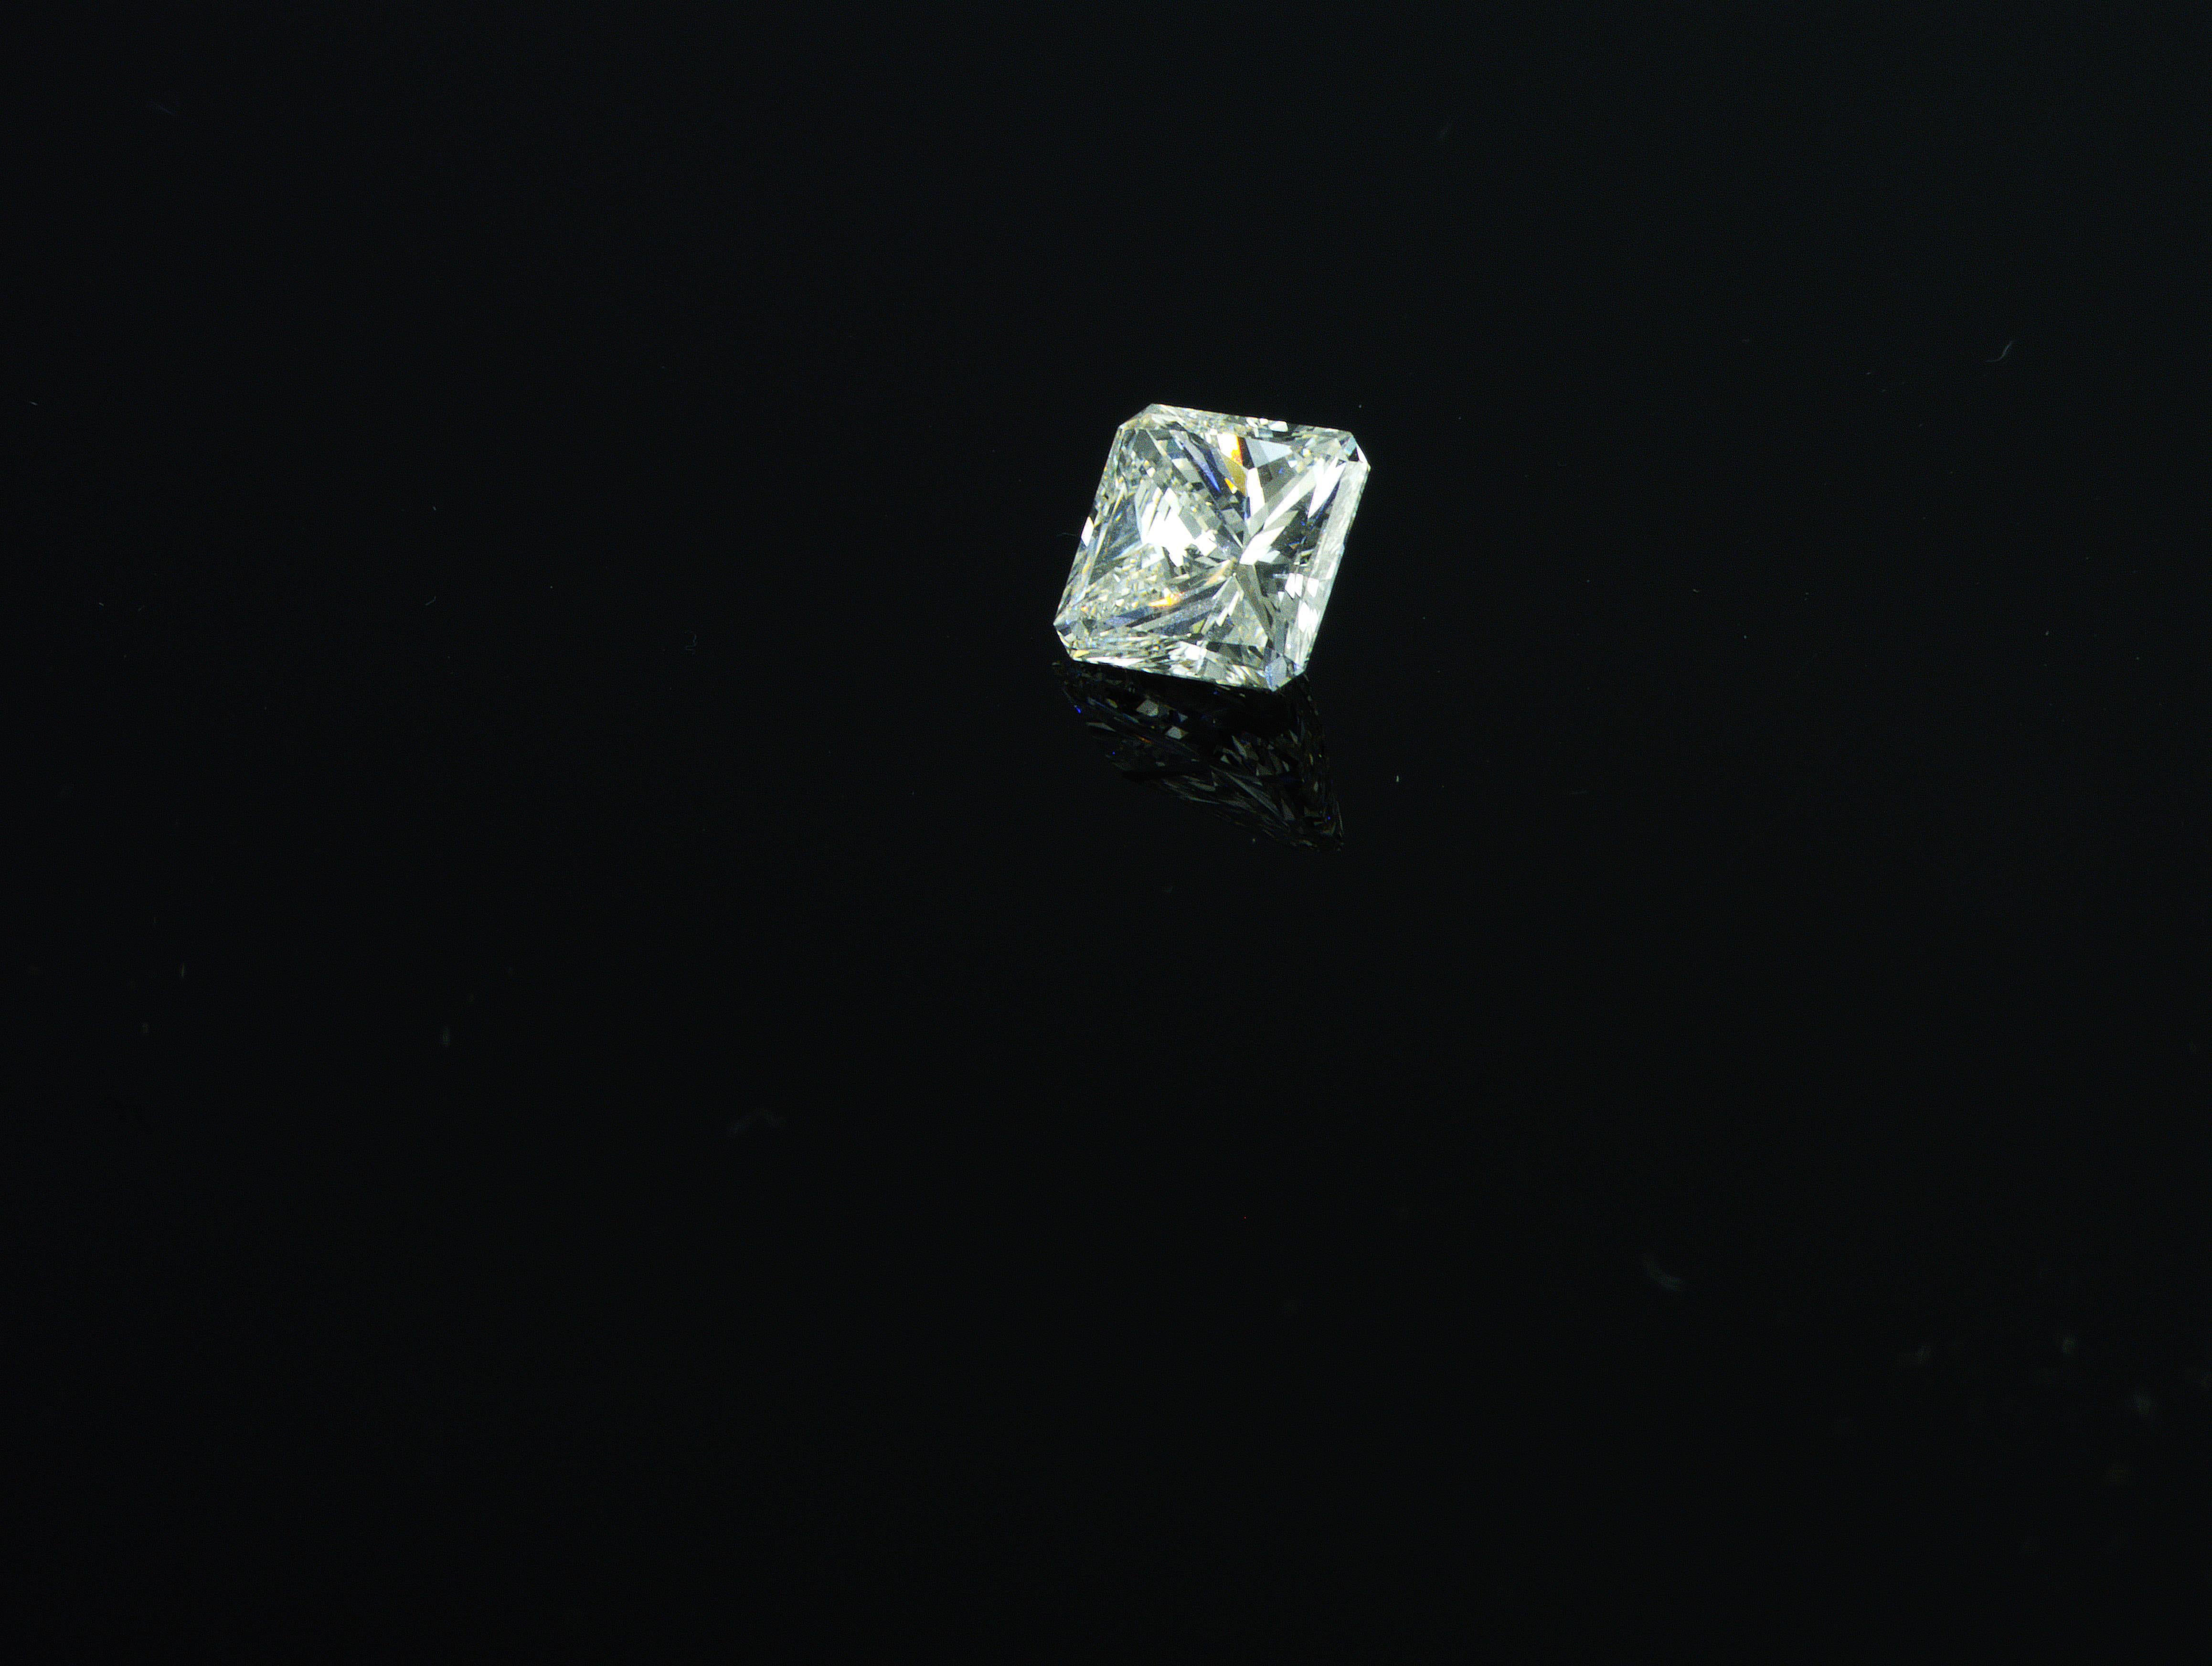 Nous sommes une société de production de diamants naturels située à Dubaï.
Poids : 1,20ct
Forme : Carré rayonnant
Couleur : blanc rare (G)
Clarté : VVS1
Polonais : Très bon
Symm : Bon
Dimensions (mm) : 6,28 x 6,13 x 4,06

HRDAntwerp  Numéro de